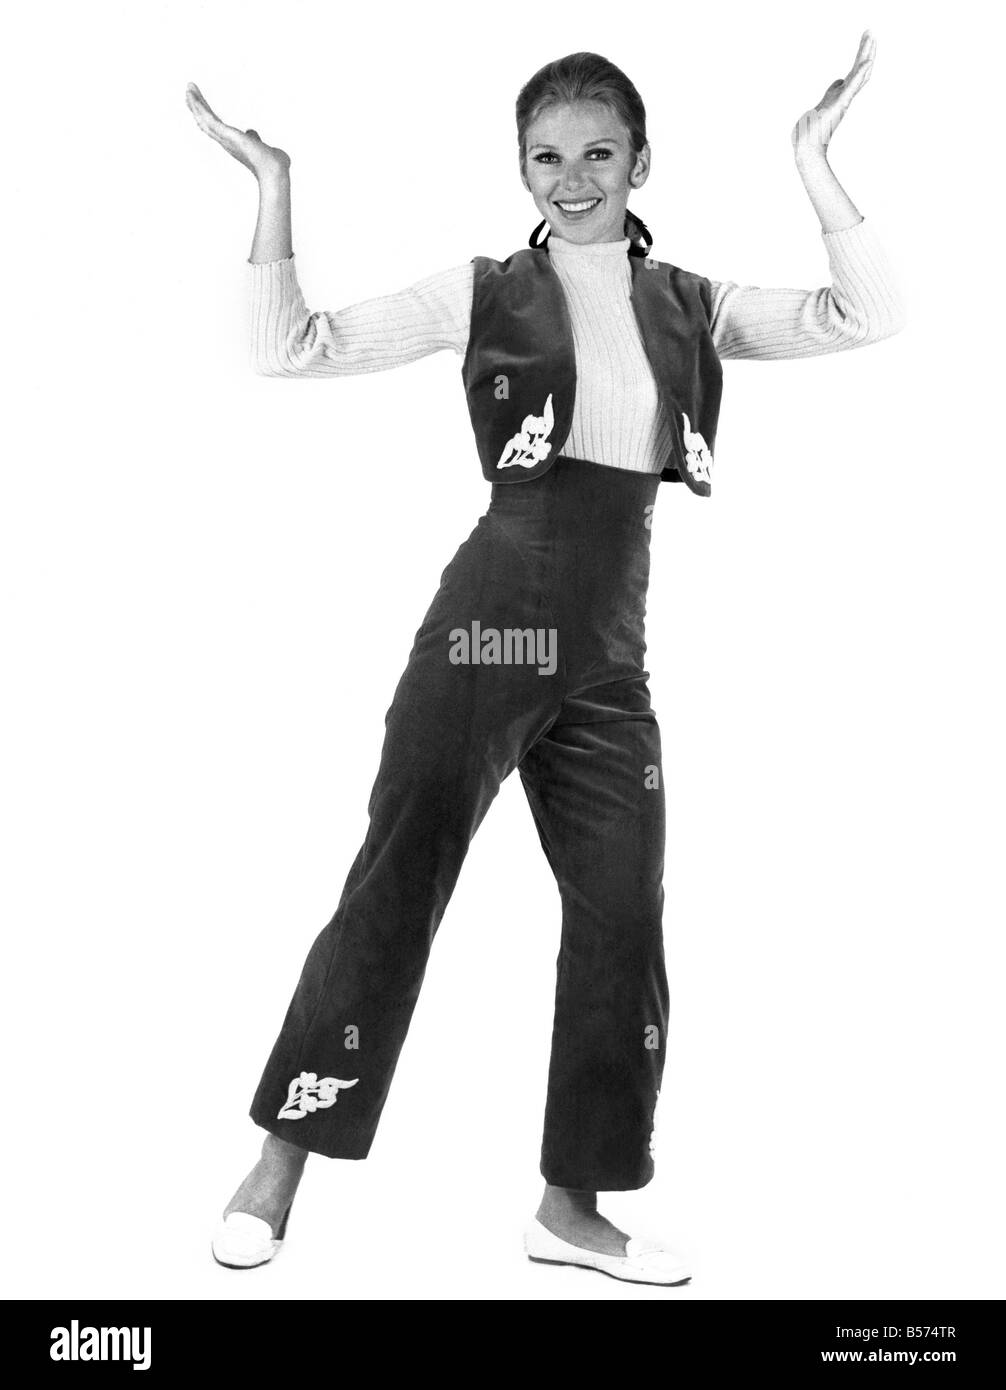 Sveglia Mode: modello indossando Spick e stile spagnolo pantaloni hipster  con abbinamento di gilet con dettaglio ricamato. Nov. 19 Foto stock - Alamy